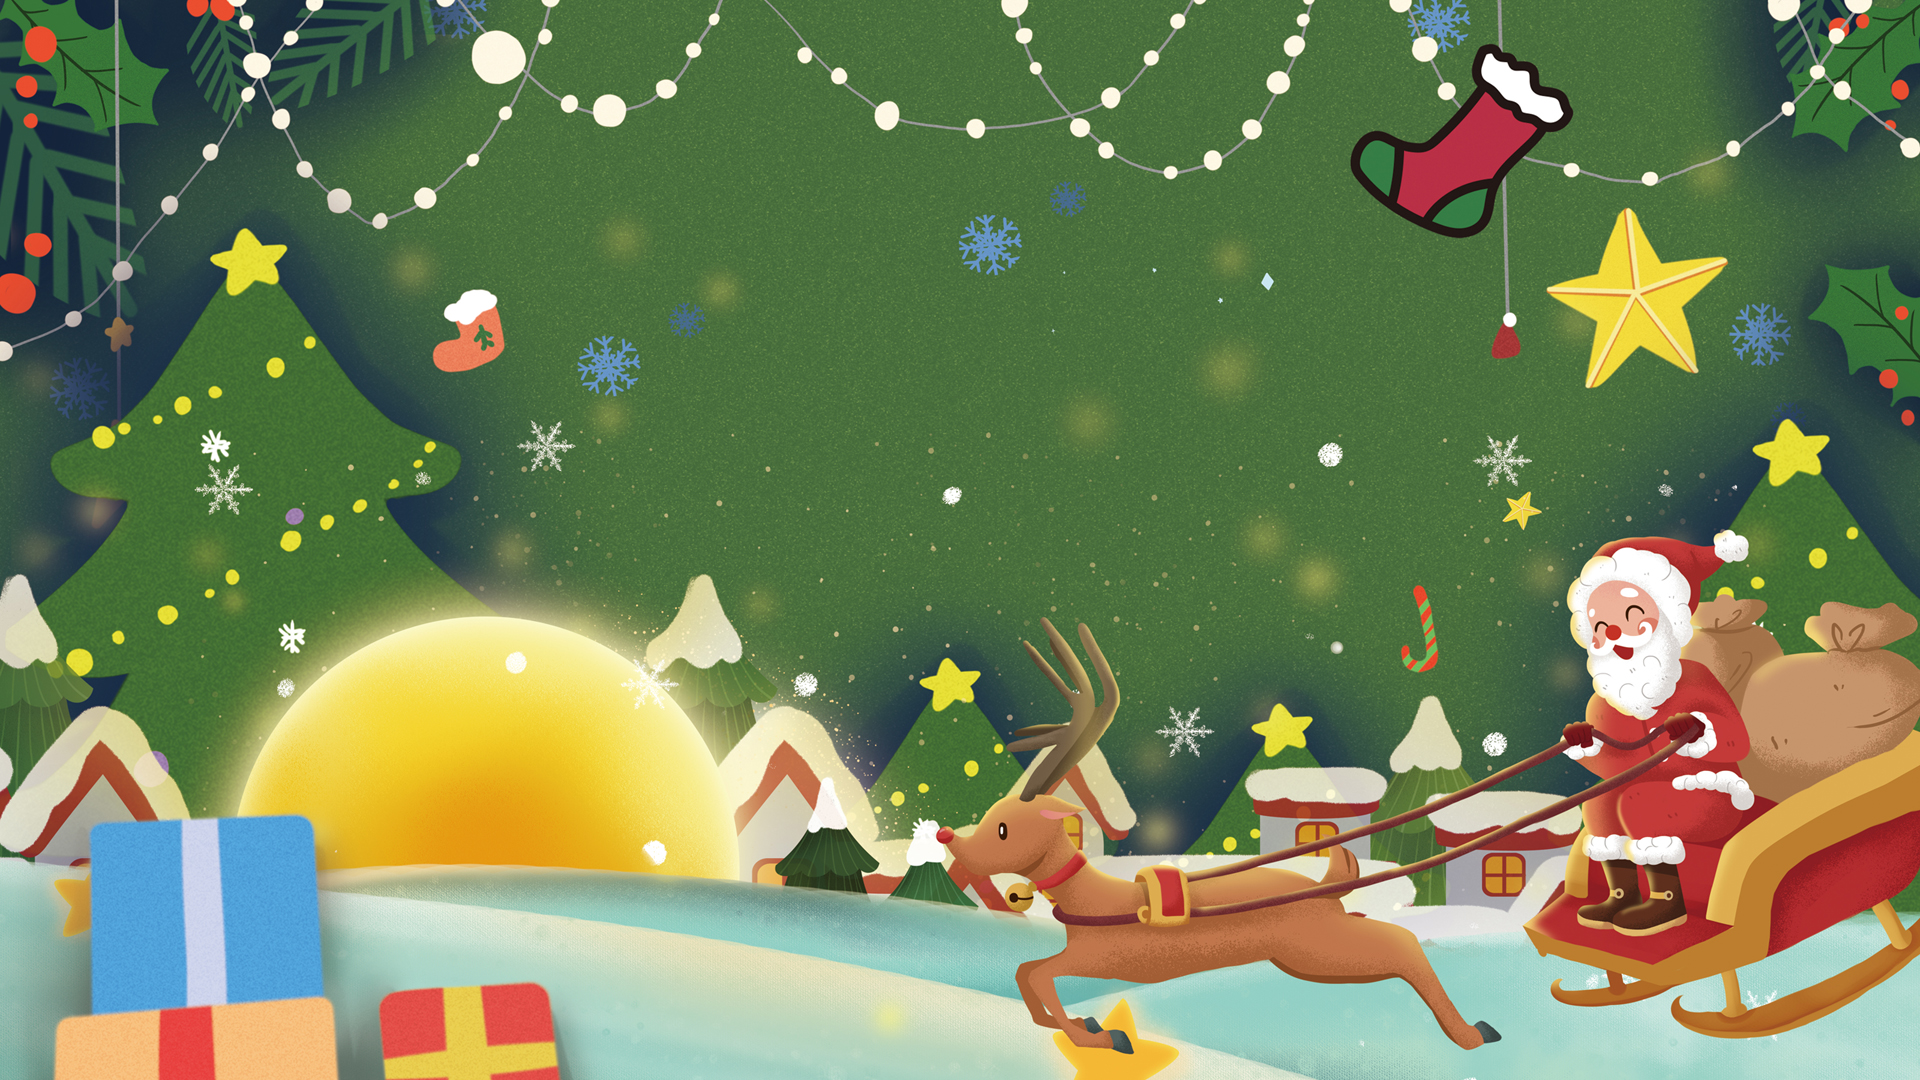 圣诞节平安夜 雪橇 圣诞老人 圣诞树 圣诞鹿 手绘圣诞节高清壁纸